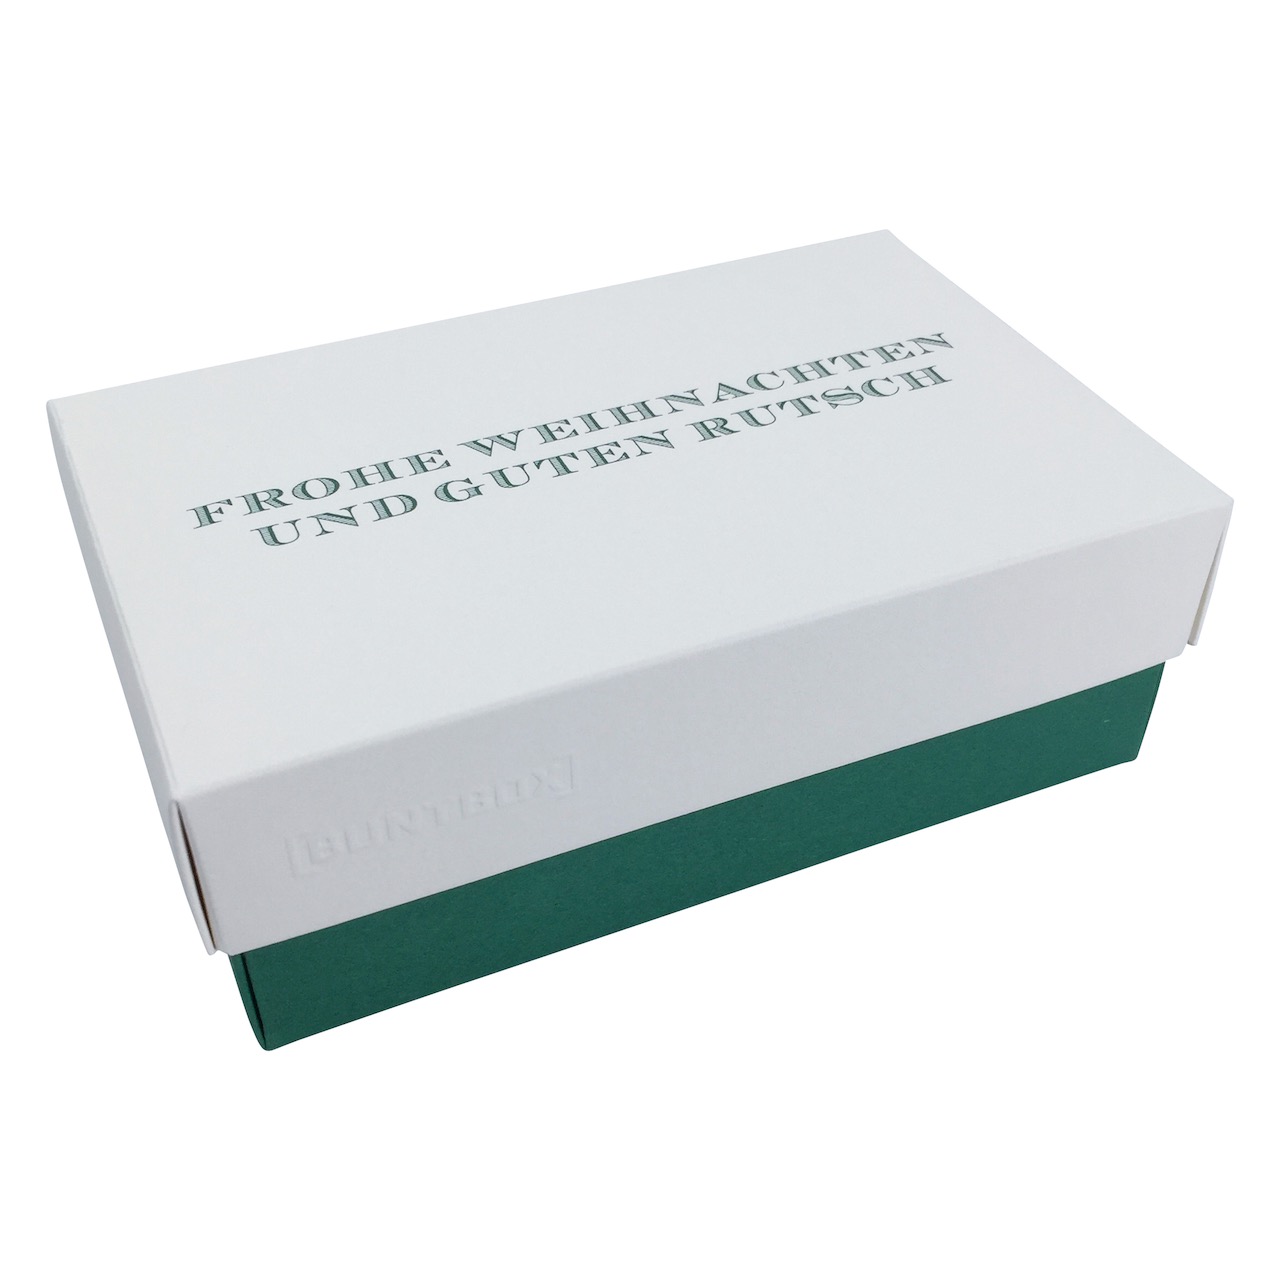 Buntbox S Fine Paper Weihnachten Rutsch in Champagner-Emerald